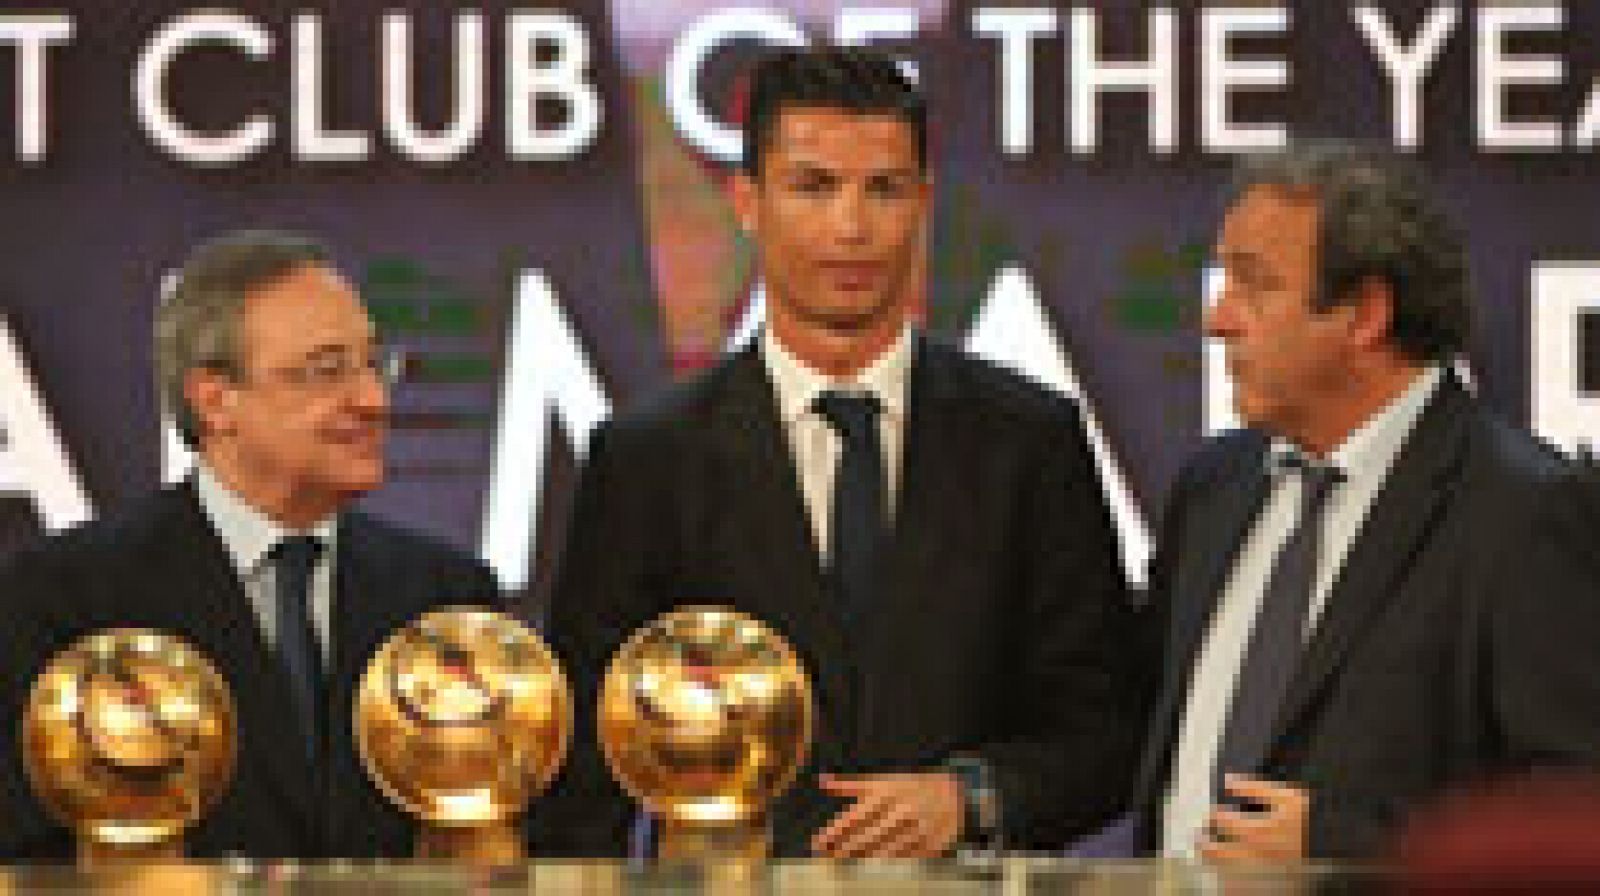 El delantero del Real Madrid Cristiano Ronaldo, galardonado en Dubai con el premio Globe Soccer al mejor futbolista del año, ha reconocido que este galardón puede ser "una buena señal para el Balón de Oro" y ha explicado que el campo de fútbol es su "lugar favorito para contestar a la gente que habla mucho".